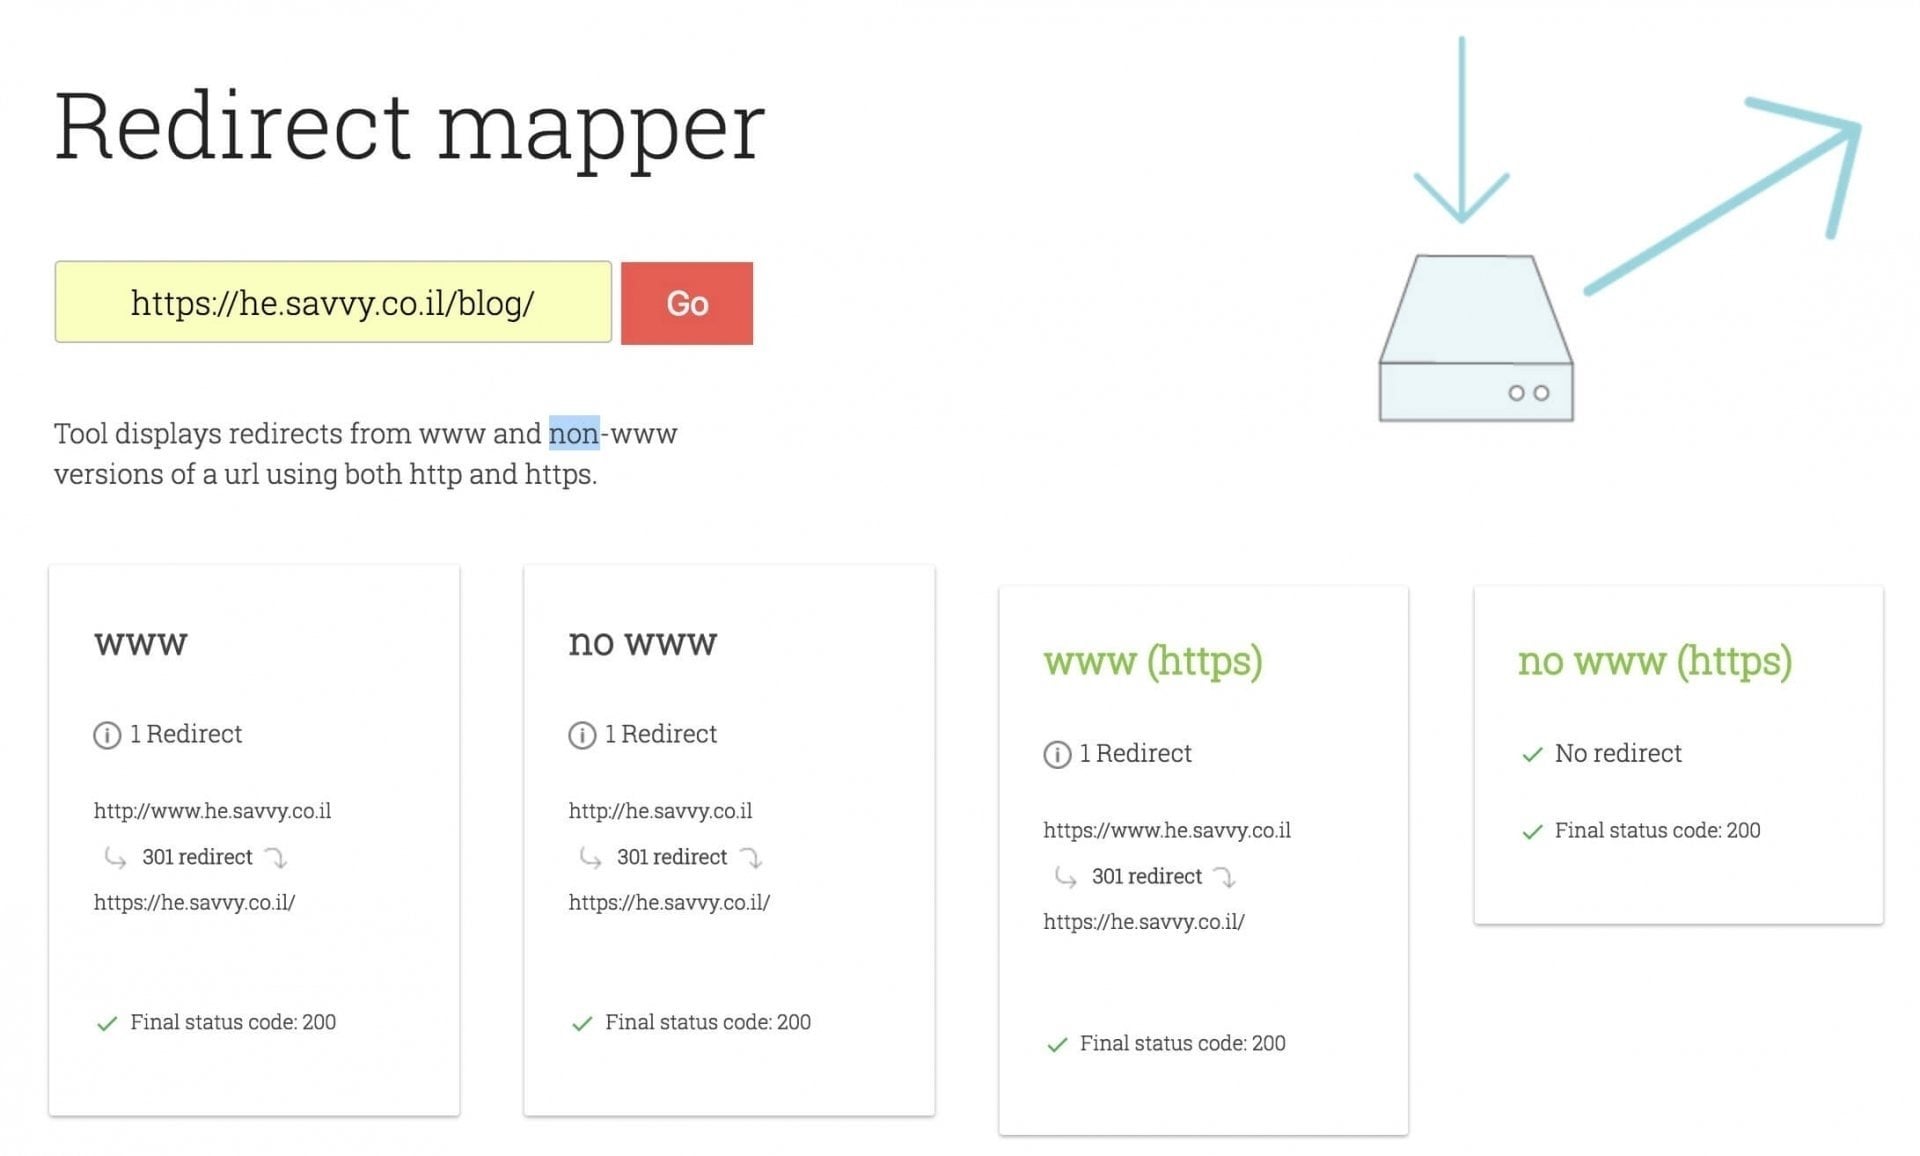 מעבר ל HTTPS - תוצאות נכונות ב Redirect Mapper